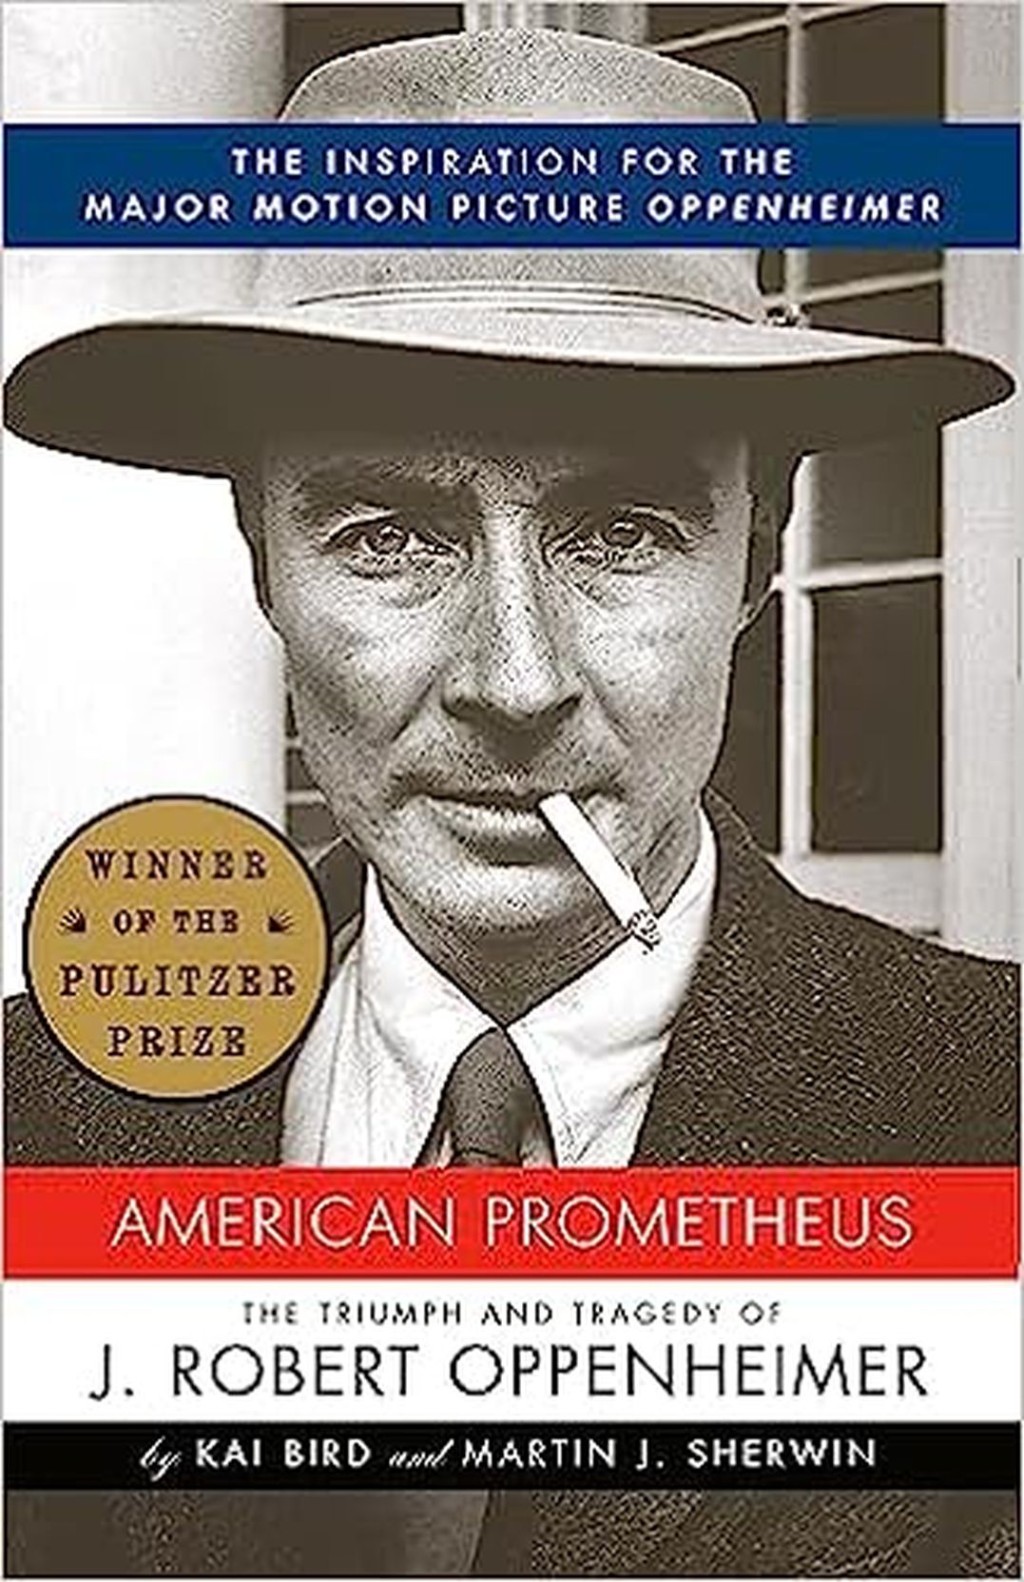 奧本海默｜《奧本海默》改編自卡伊·伯德和馬丁·J·舒爾文撰寫的得獎傳記《美國普羅米修斯》（《American Prometheus: The Triumph and Tragedy of J. Robert Oppenheimer》），講述關於有「原子彈之父」之稱的奧本海默（Julius Robert Oppenheimer）於二戰期間參與「曼哈頓計畫」，設計了人類首顆原子彈的故事。